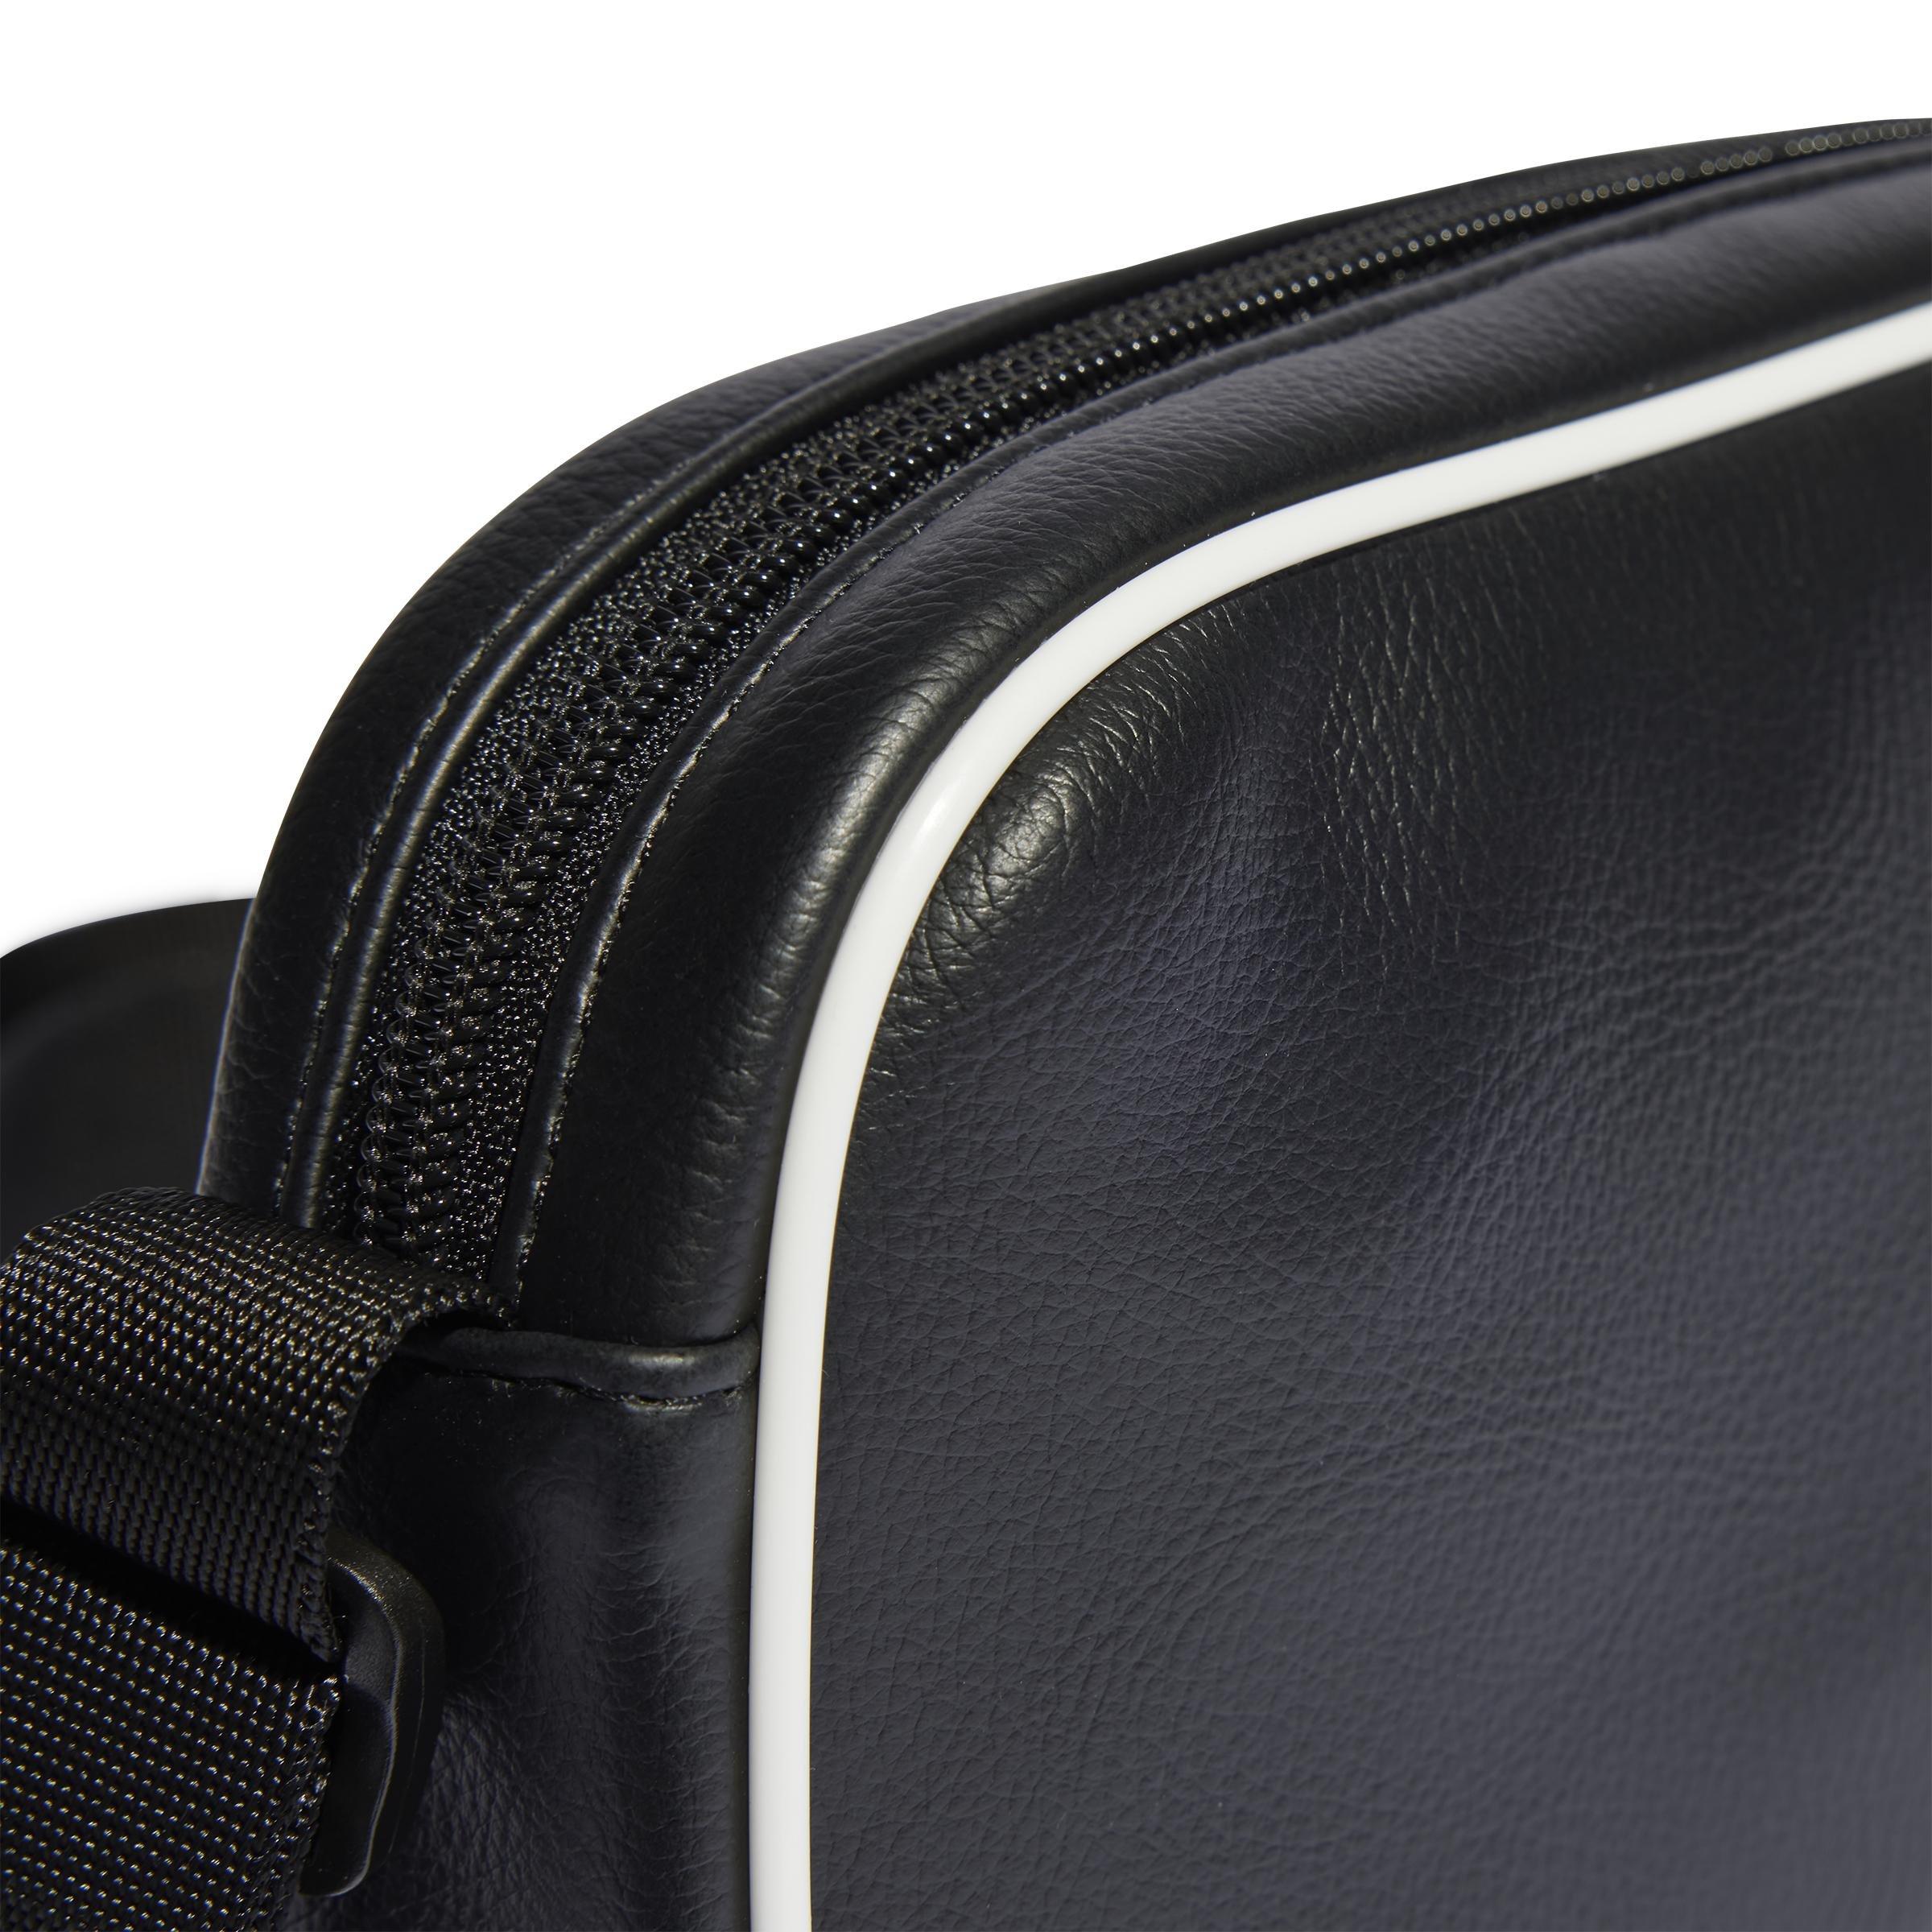 adidas - Unisex Adicolor Classic Mini Airliner Bag, Black